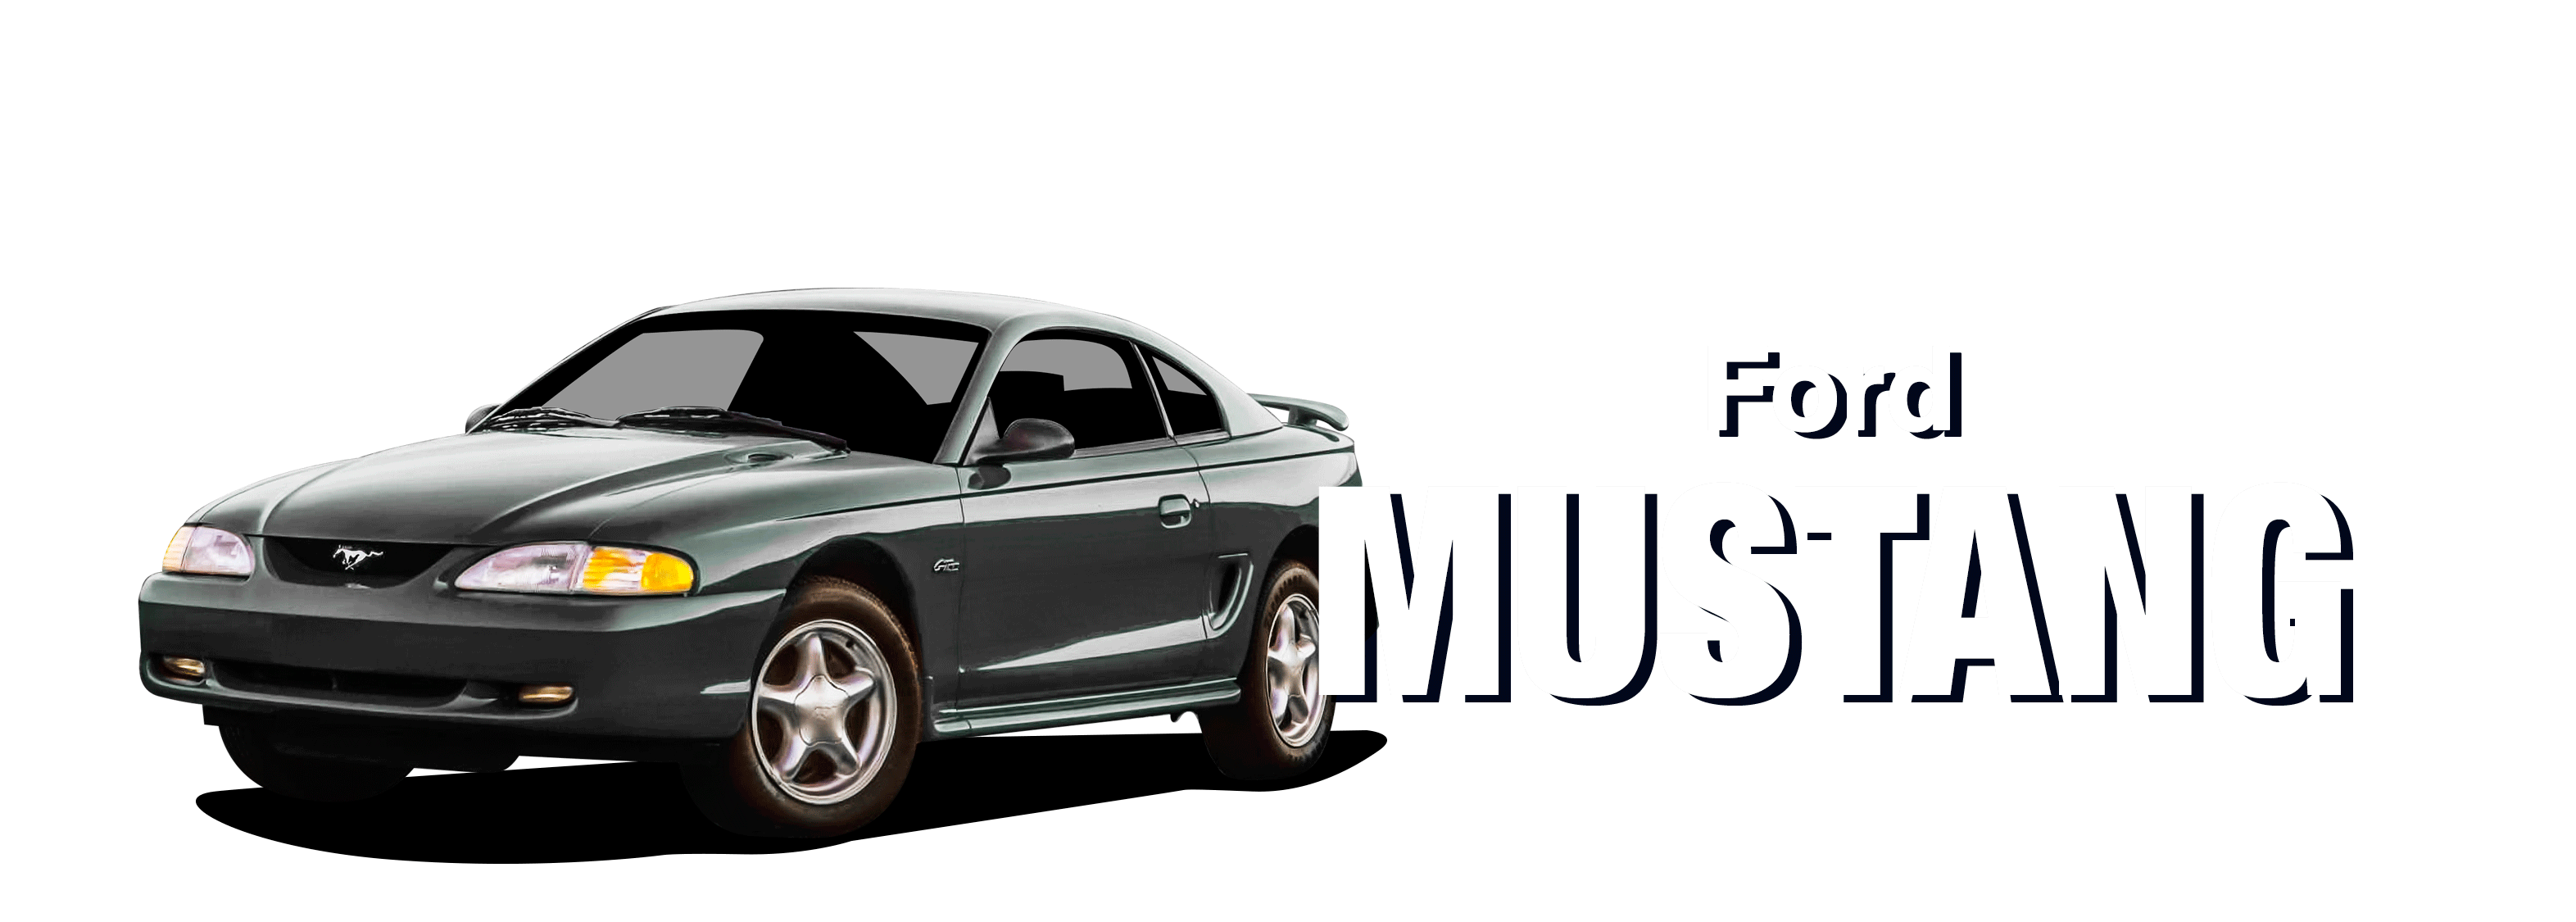 Ford-MustangSN95-vehicle-desktop